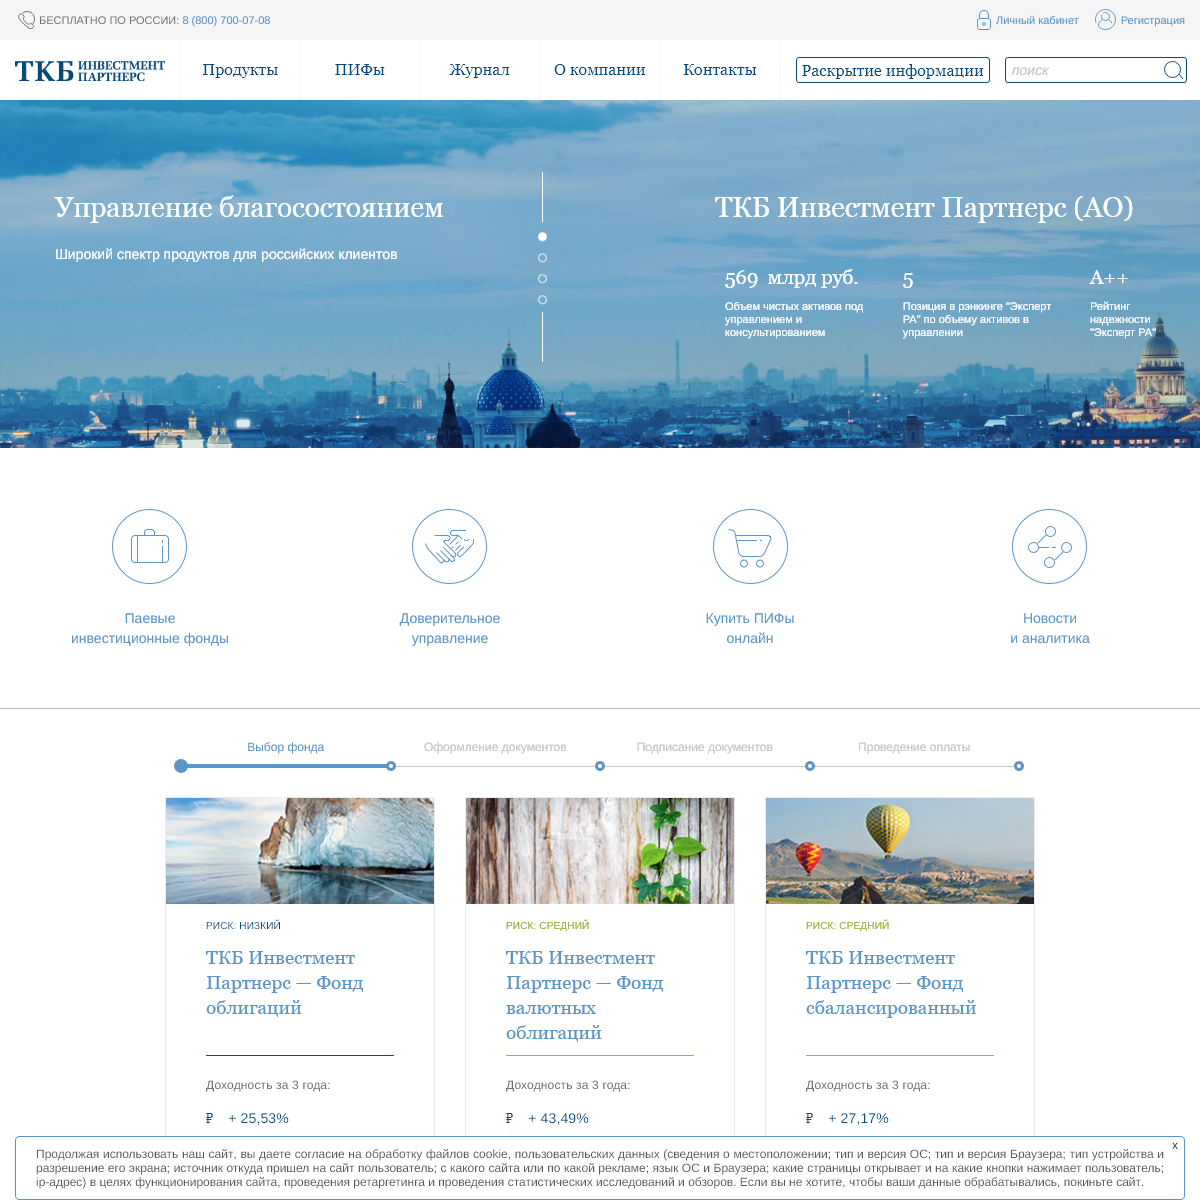 A complete backup of tkbip.ru